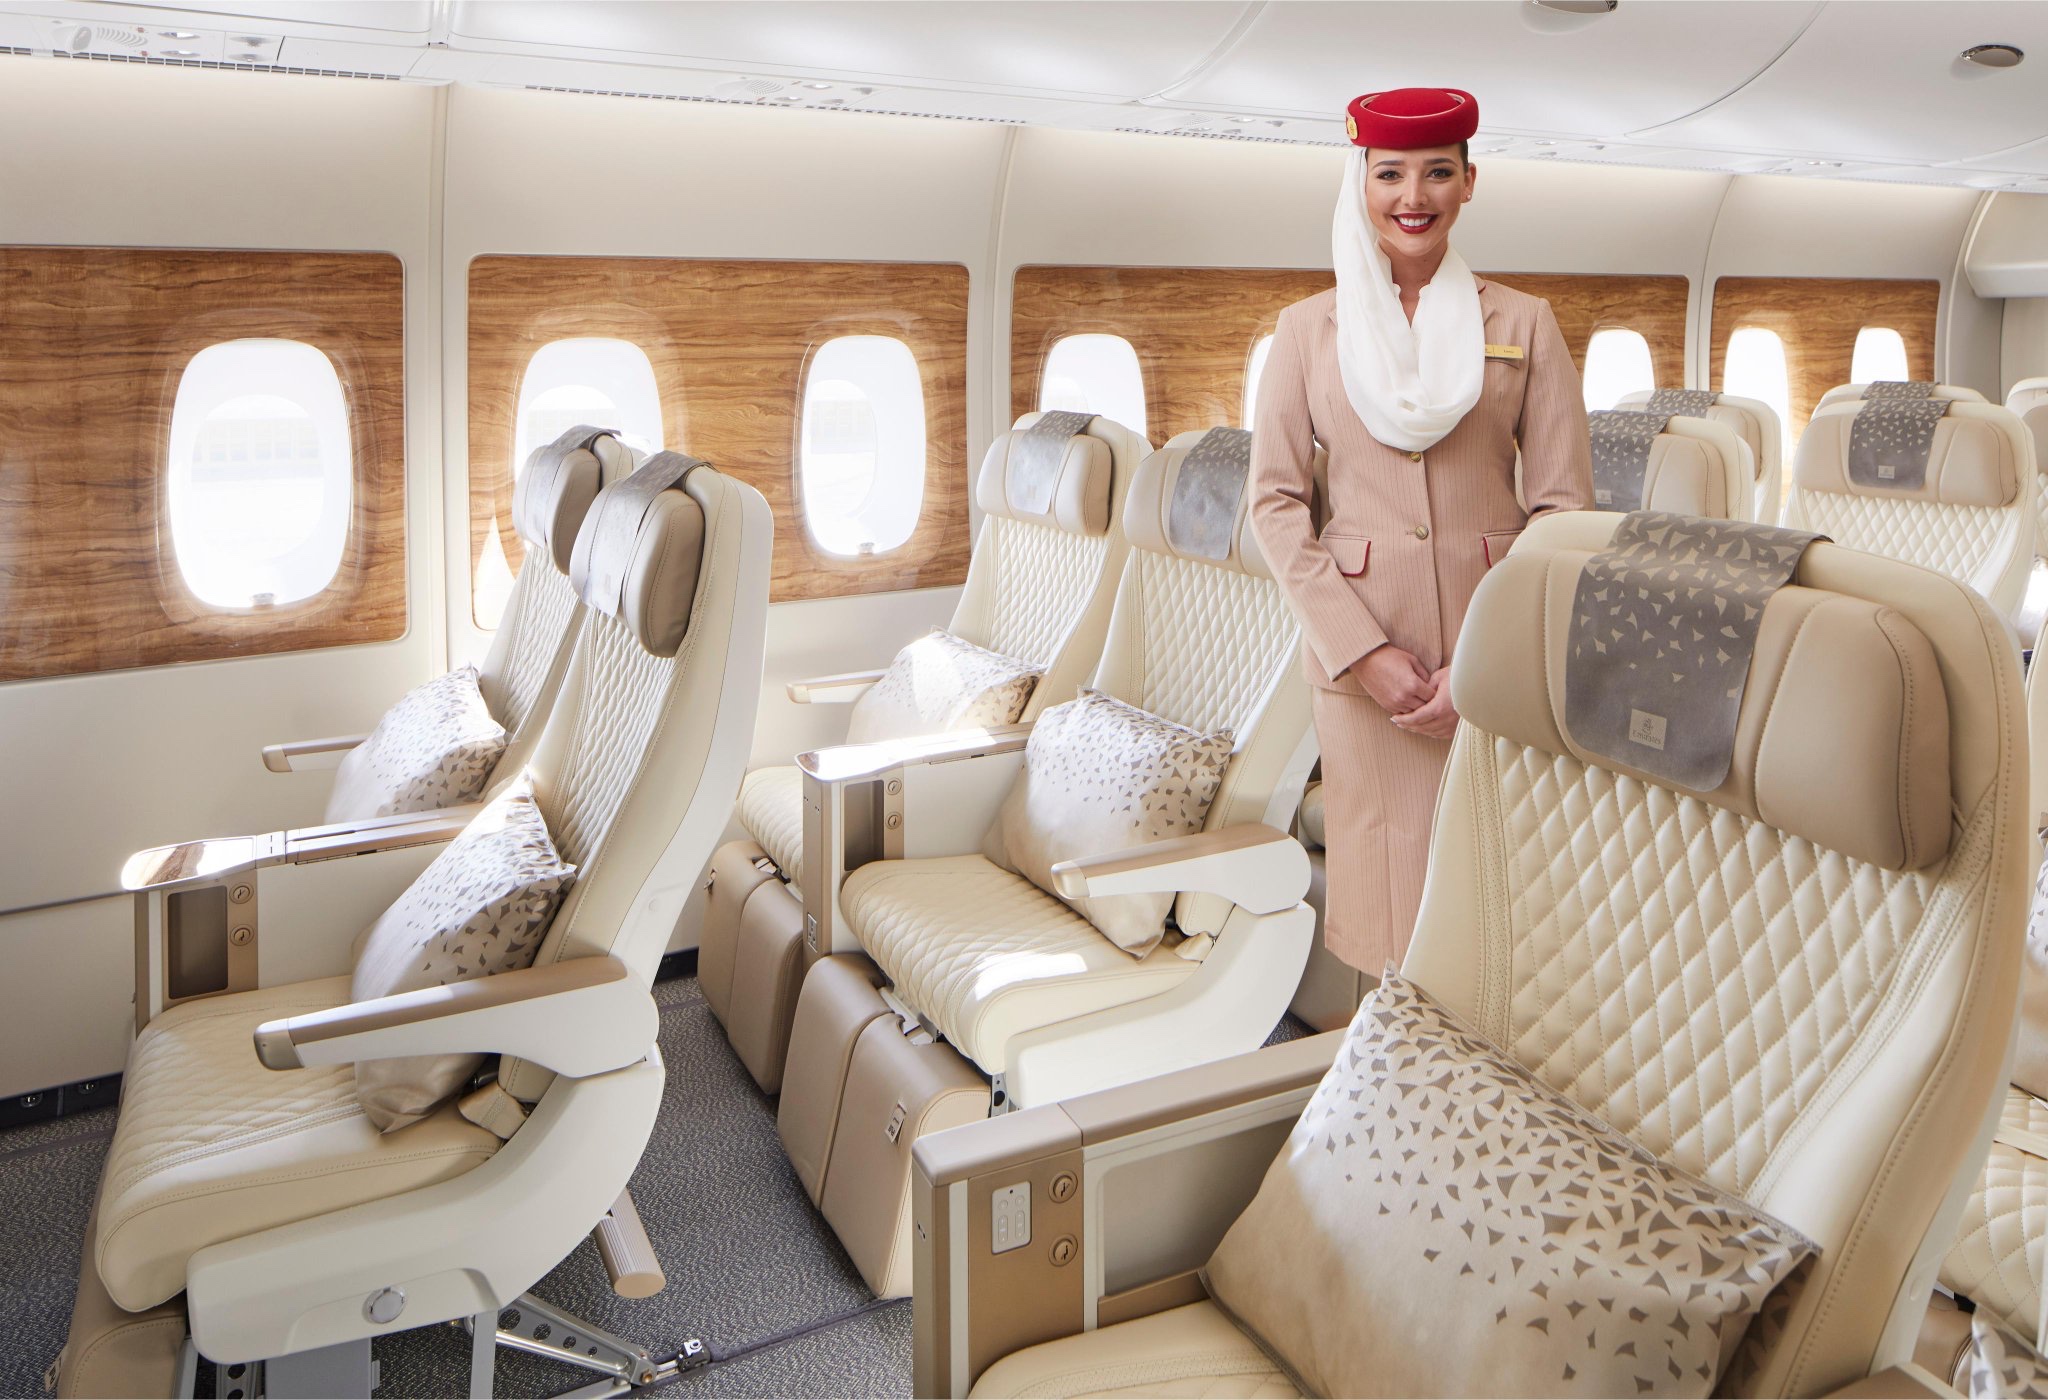 Emirates Premium Economy cabin